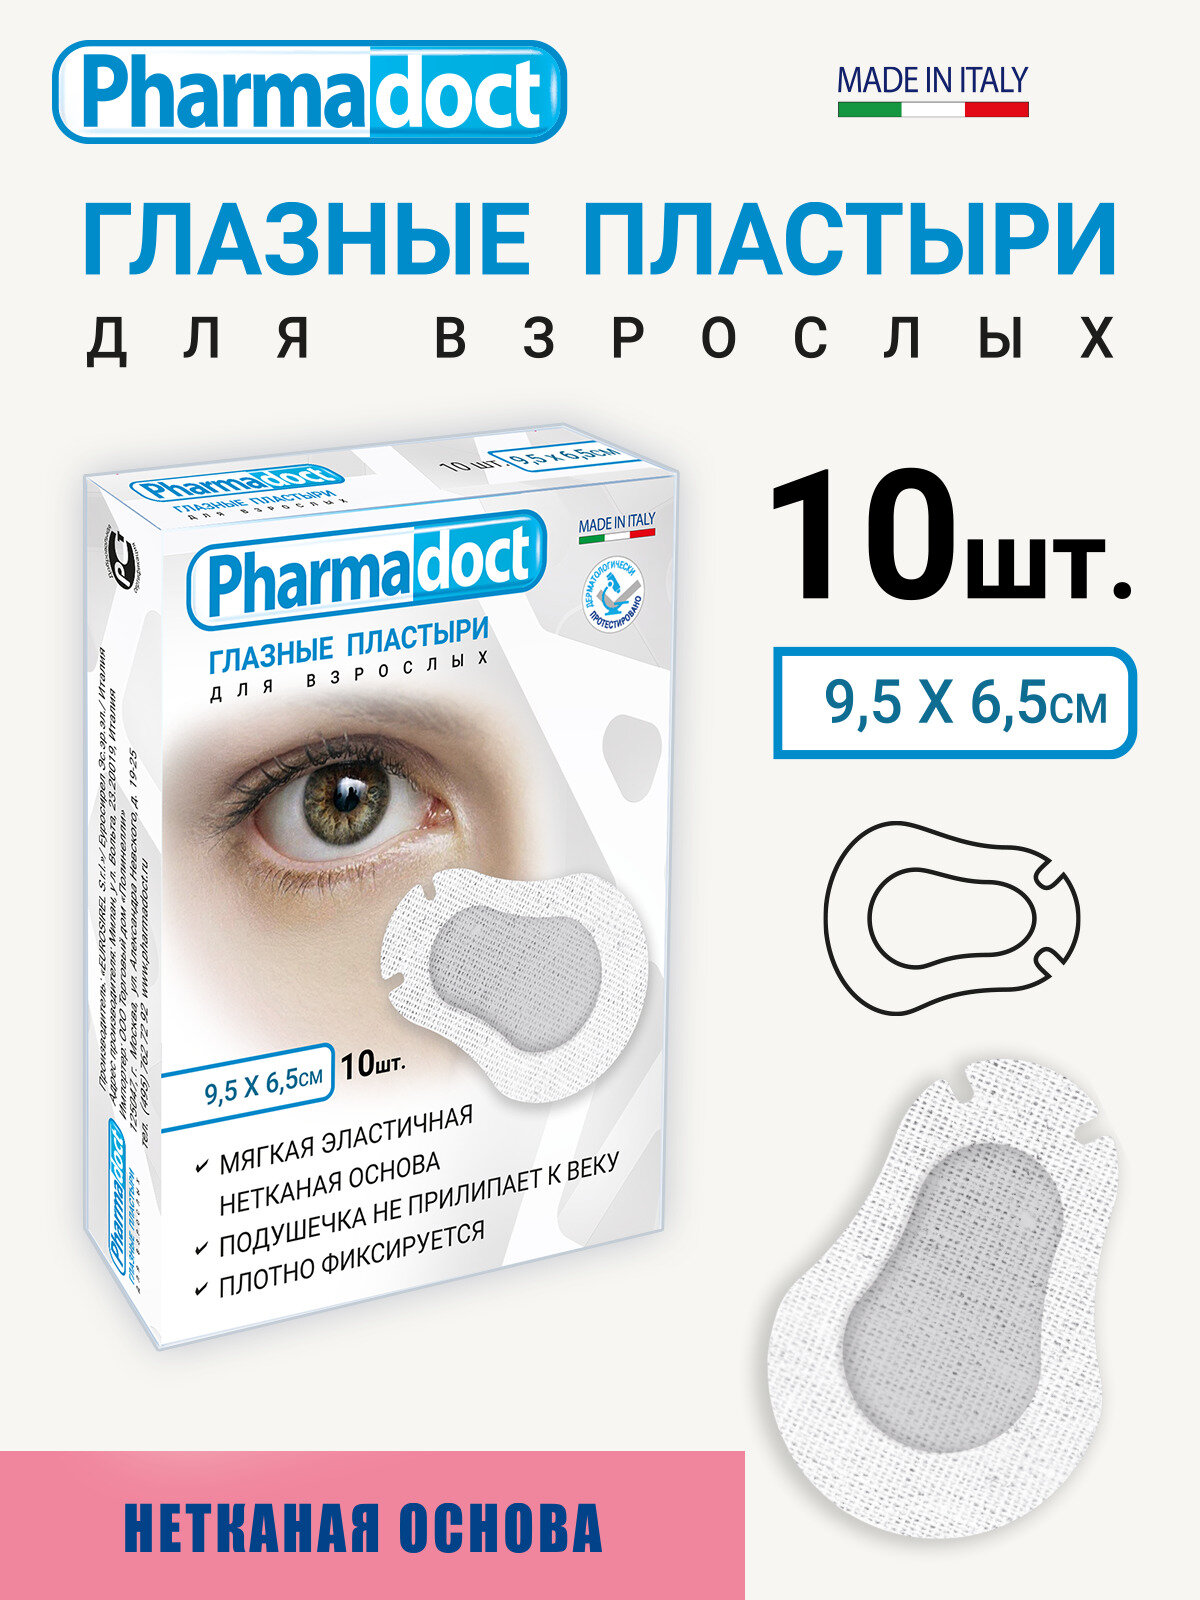 Лейкопластырь Pharmadoct Пластырь Глазной Для взрослых 9,5 х 6,5см окклюдер 10шт,